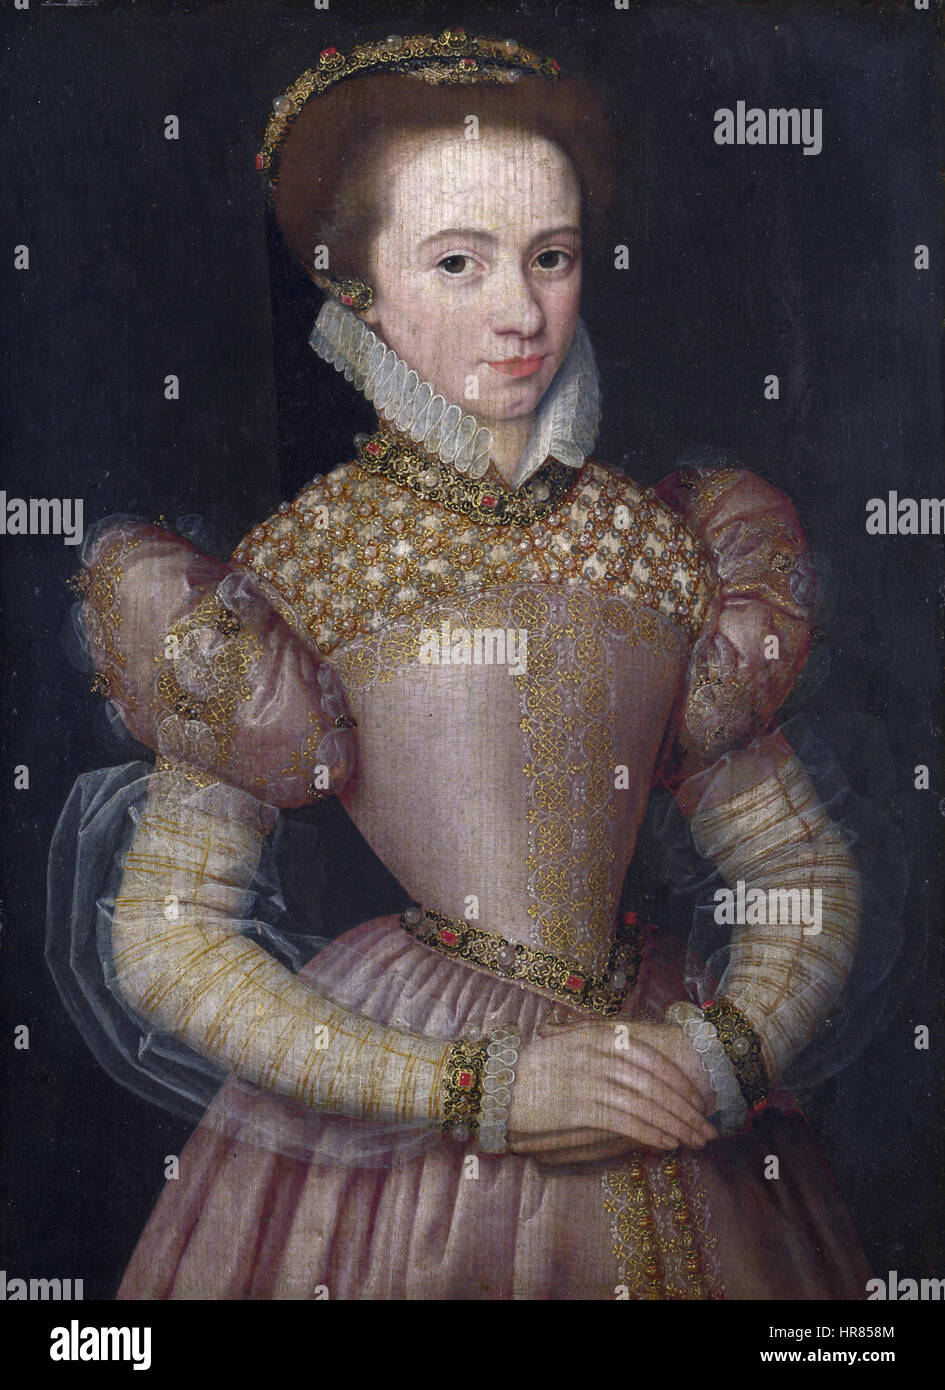 Artista desconocido retrato de una dama1570s Foto de stock